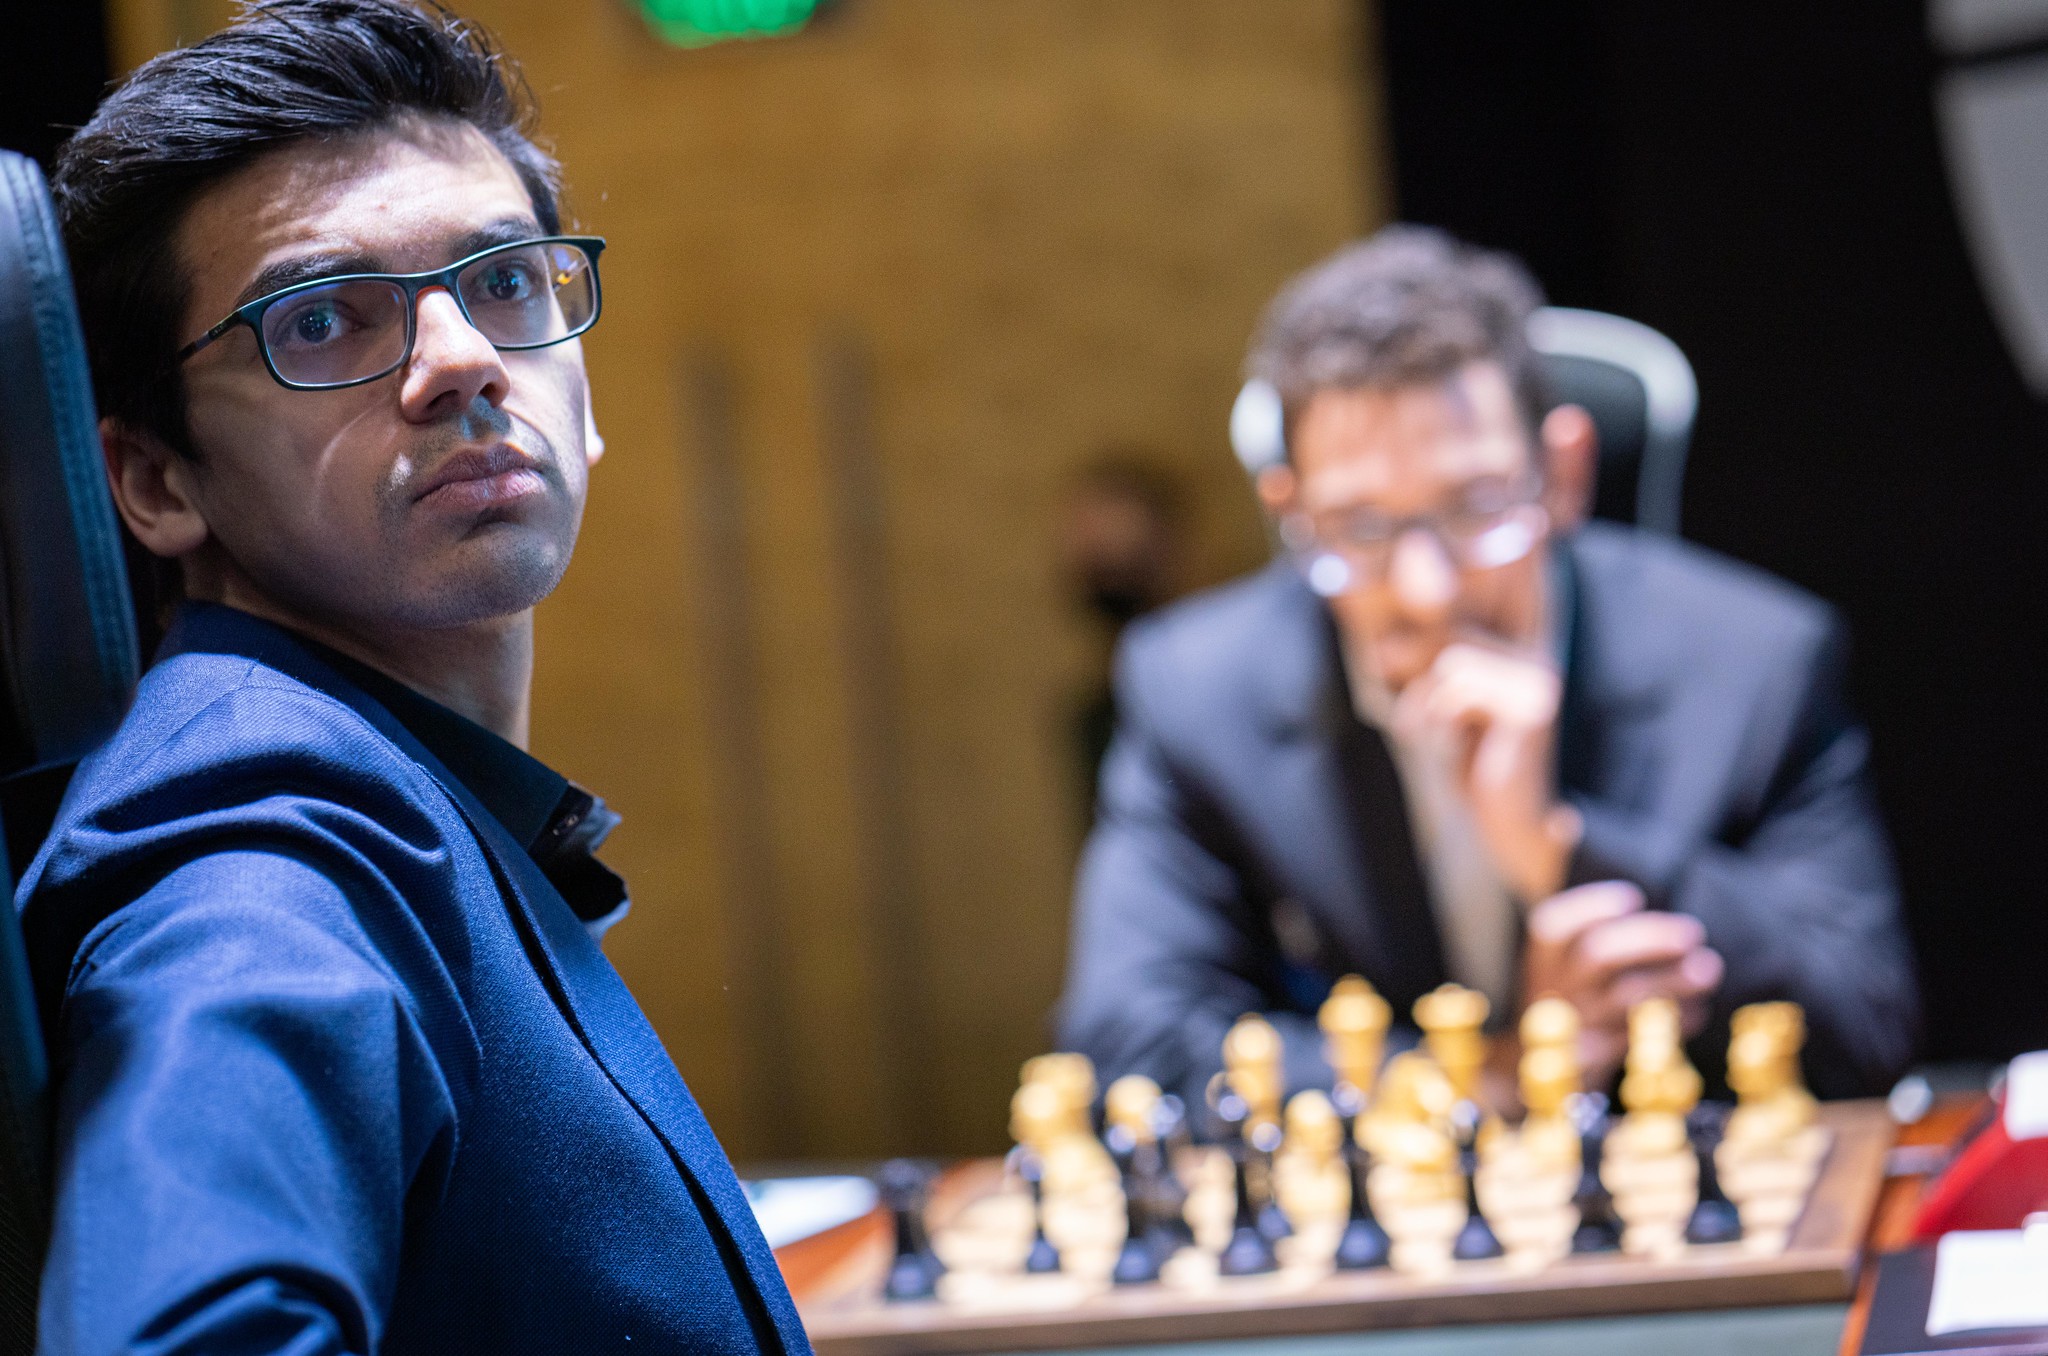 Beim Kandidatenturnier 2020/21 saßen Anish Giri und Fabiano Caruana einander gegenüber. In den Reihen der OSG Baden-Baden können sie jetzt Seite an Seite spielen. | Foto: Lennart Ootes/FIDE